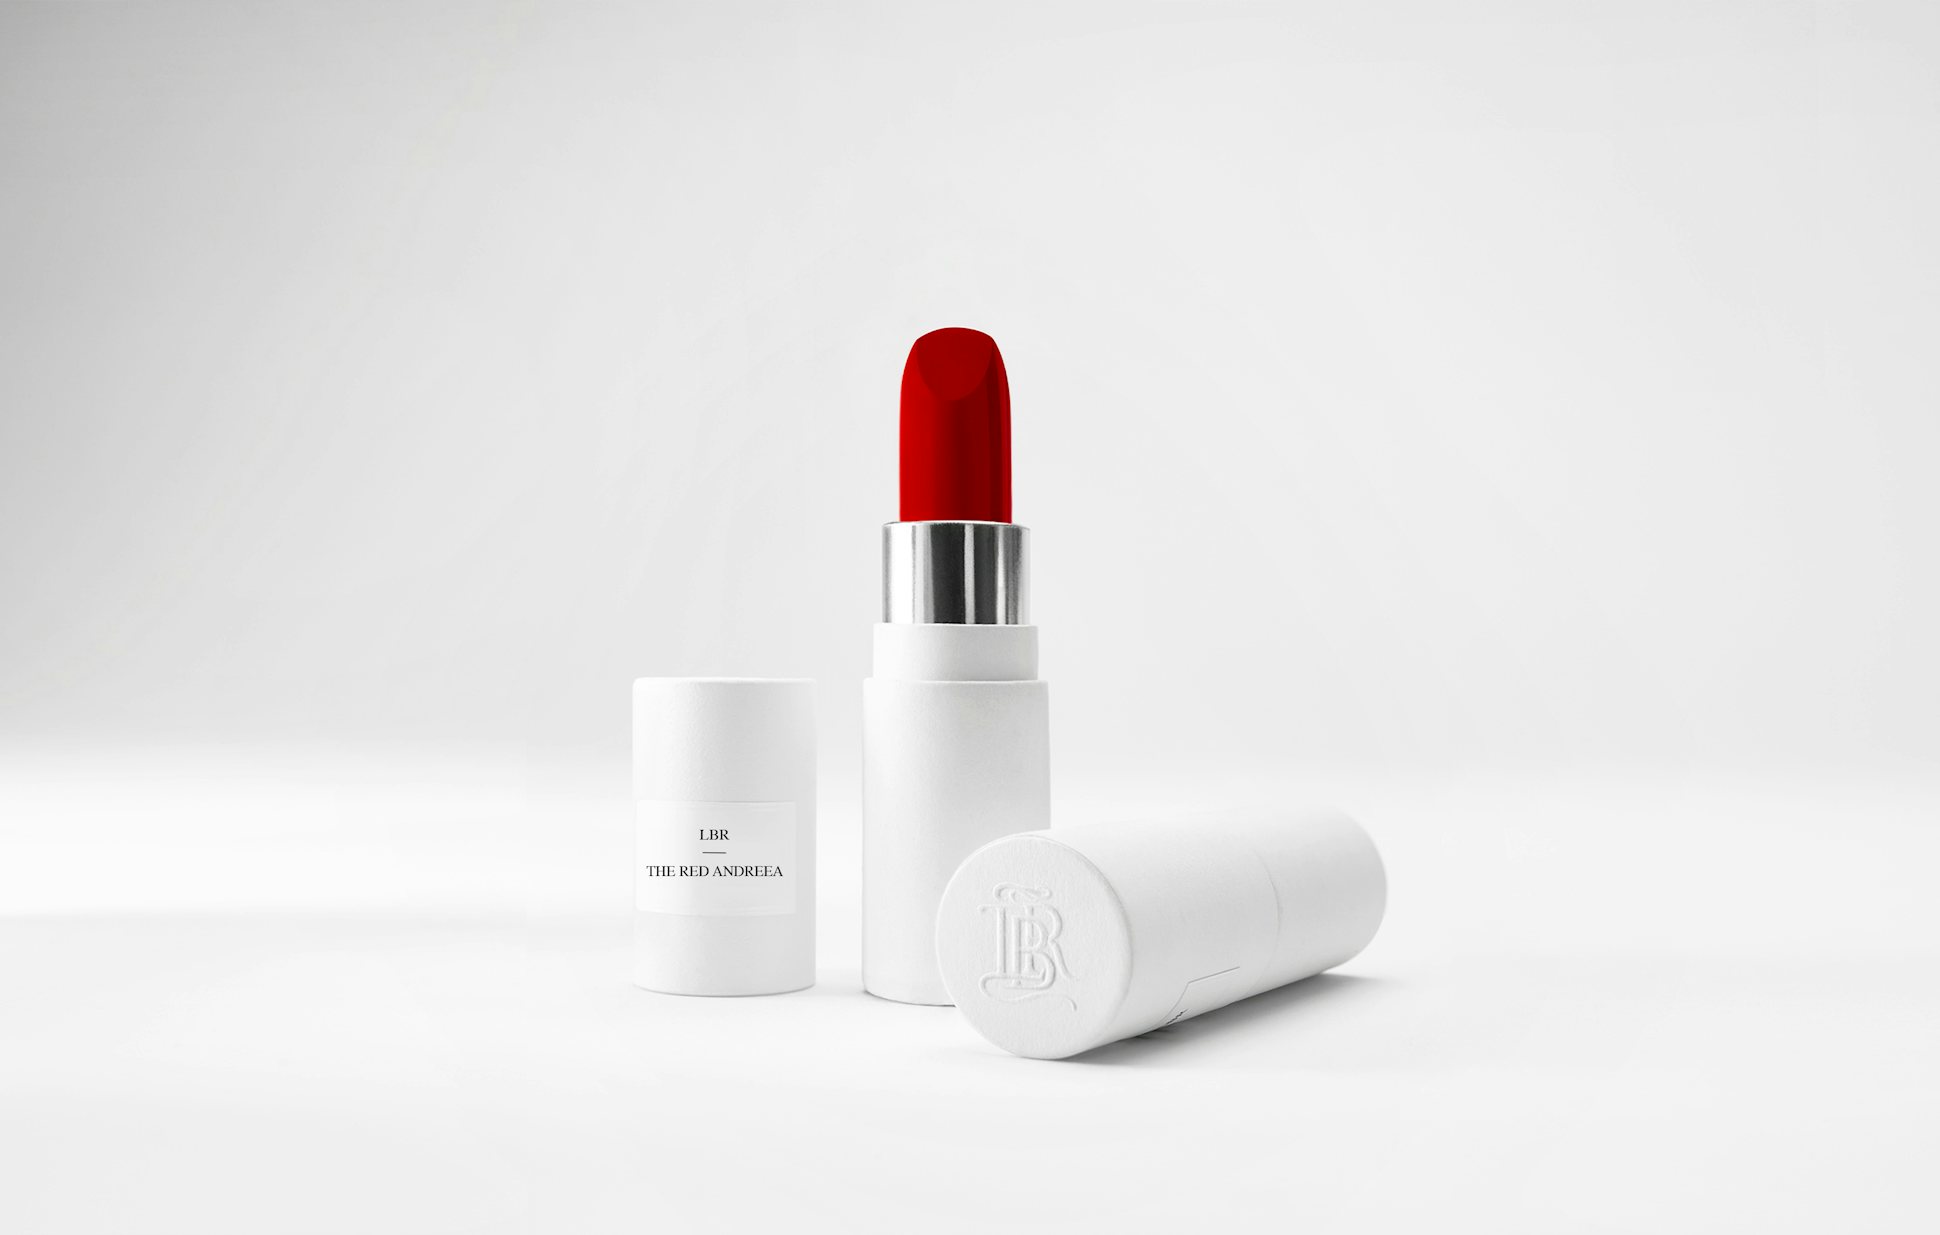 La bouche rouge The Andreea lipstick in the white paper case